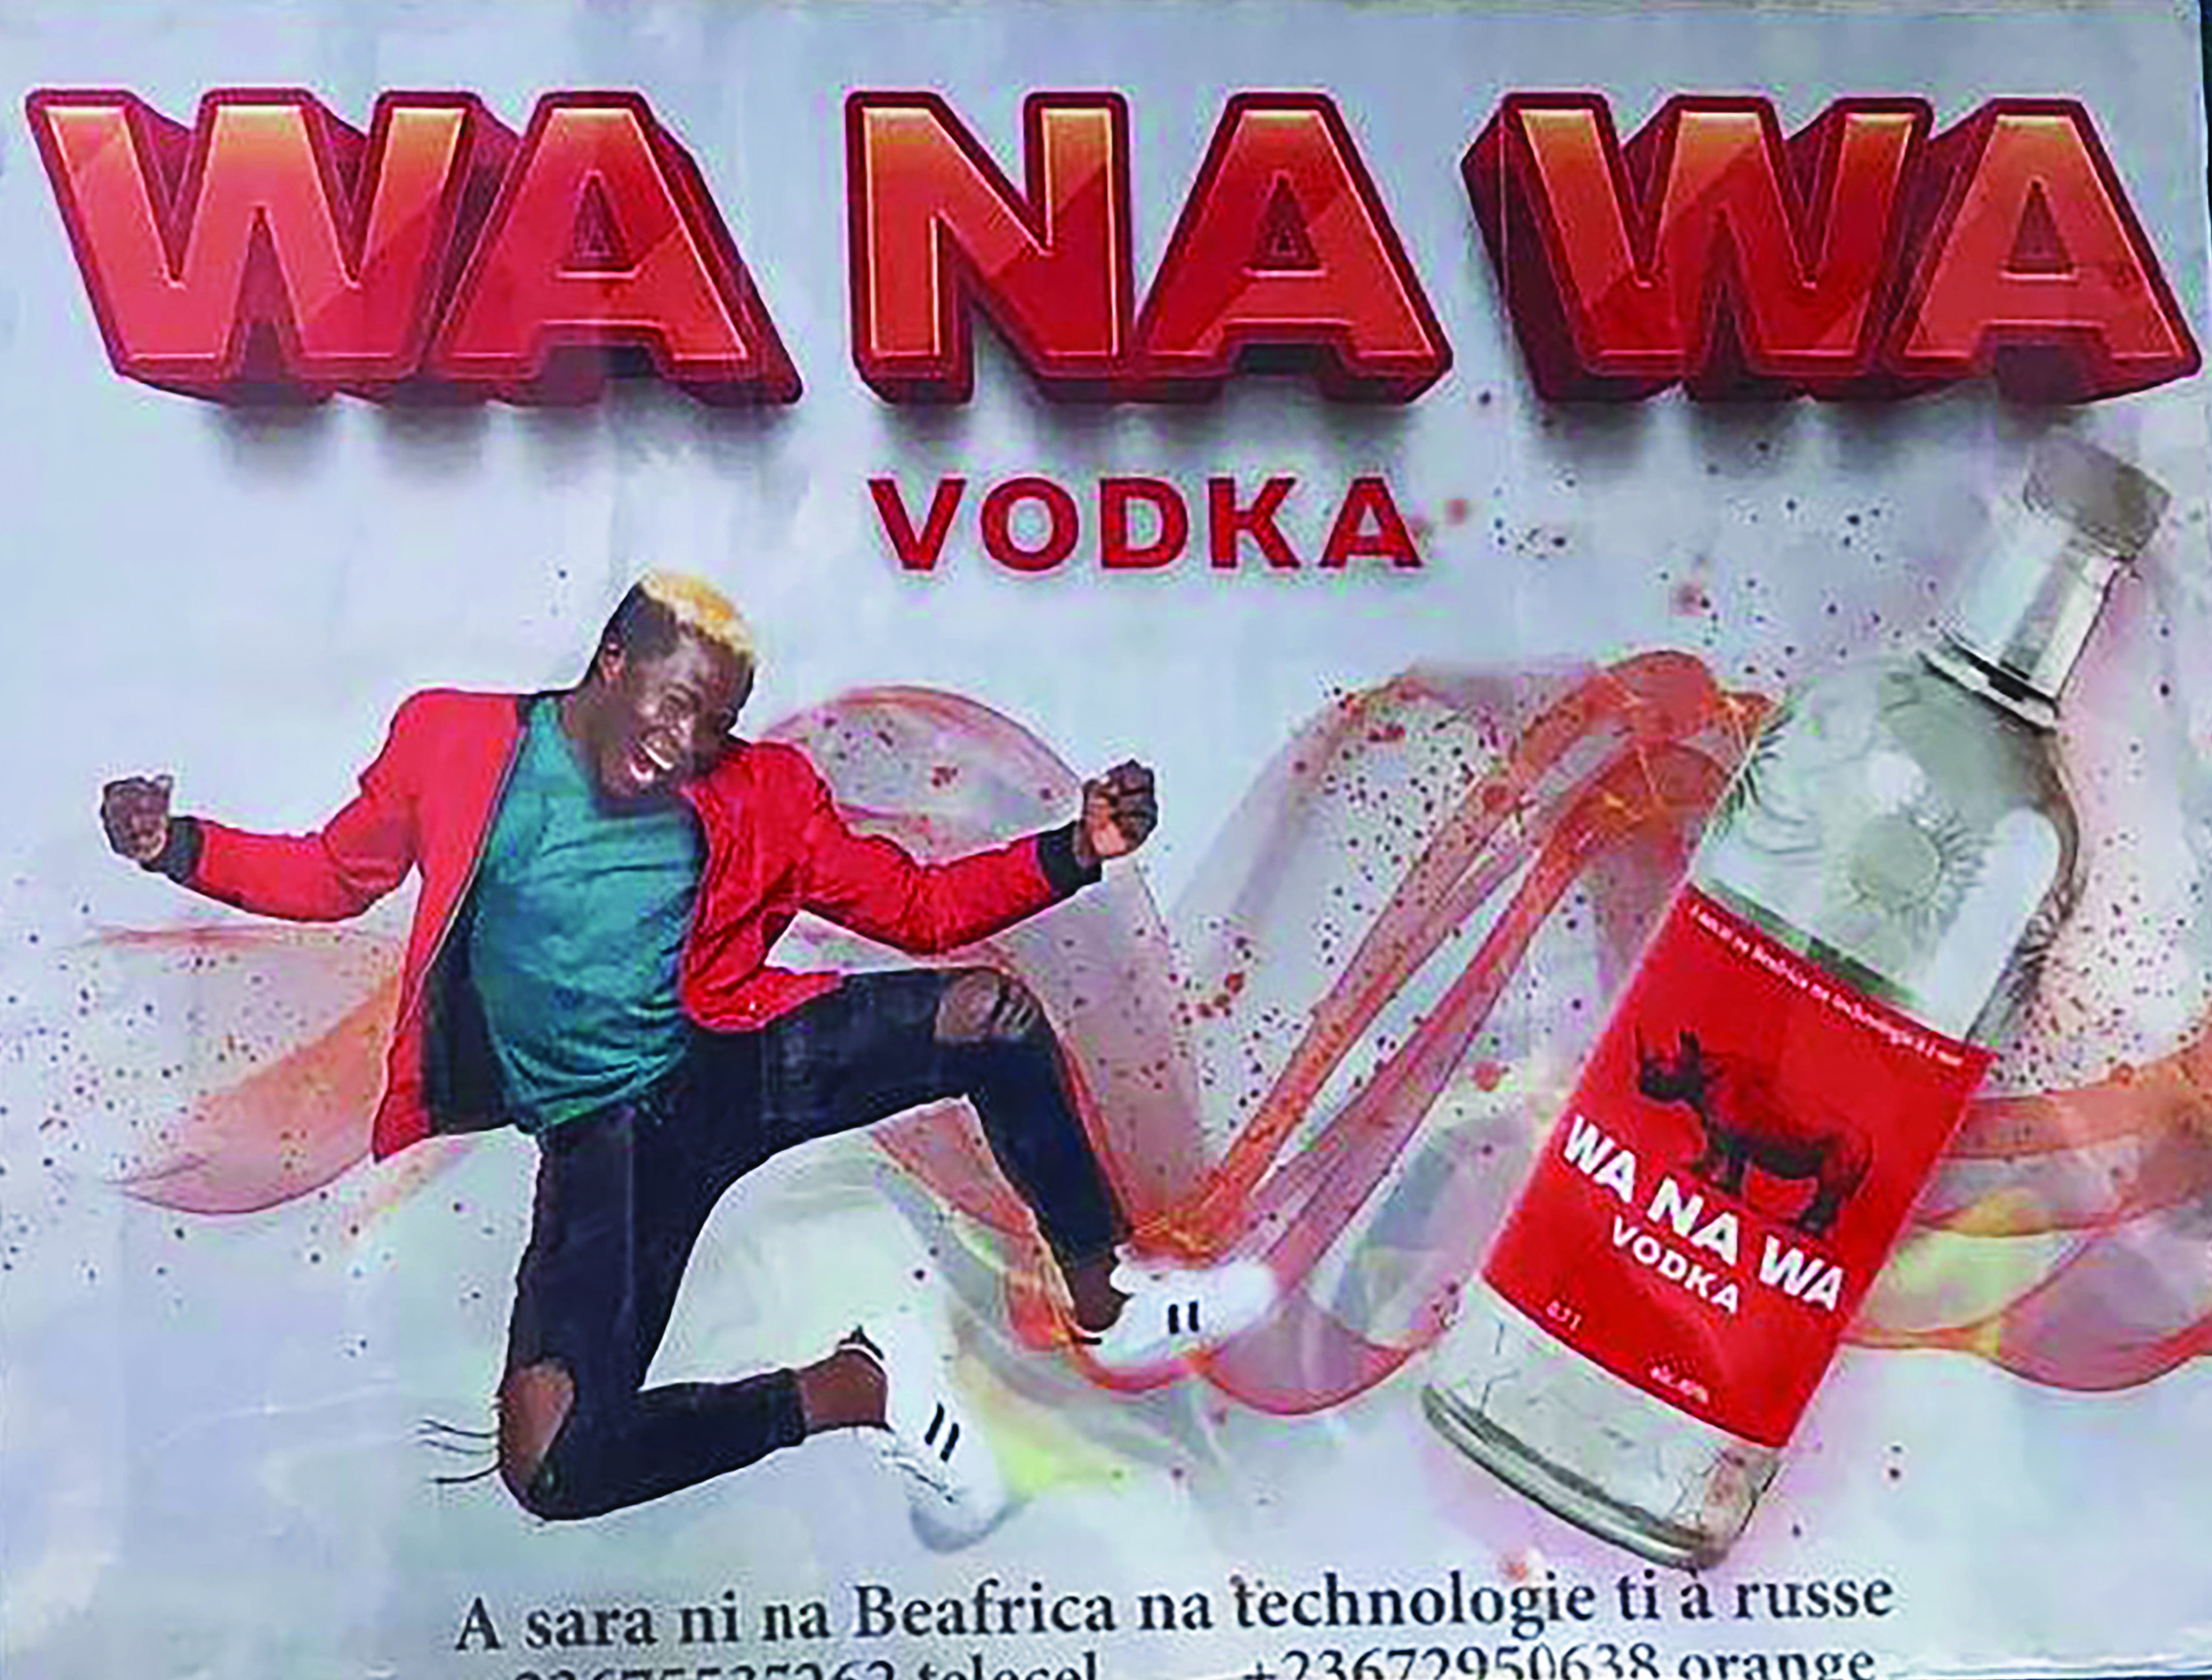 Advert for Wa Na Wa Vodka